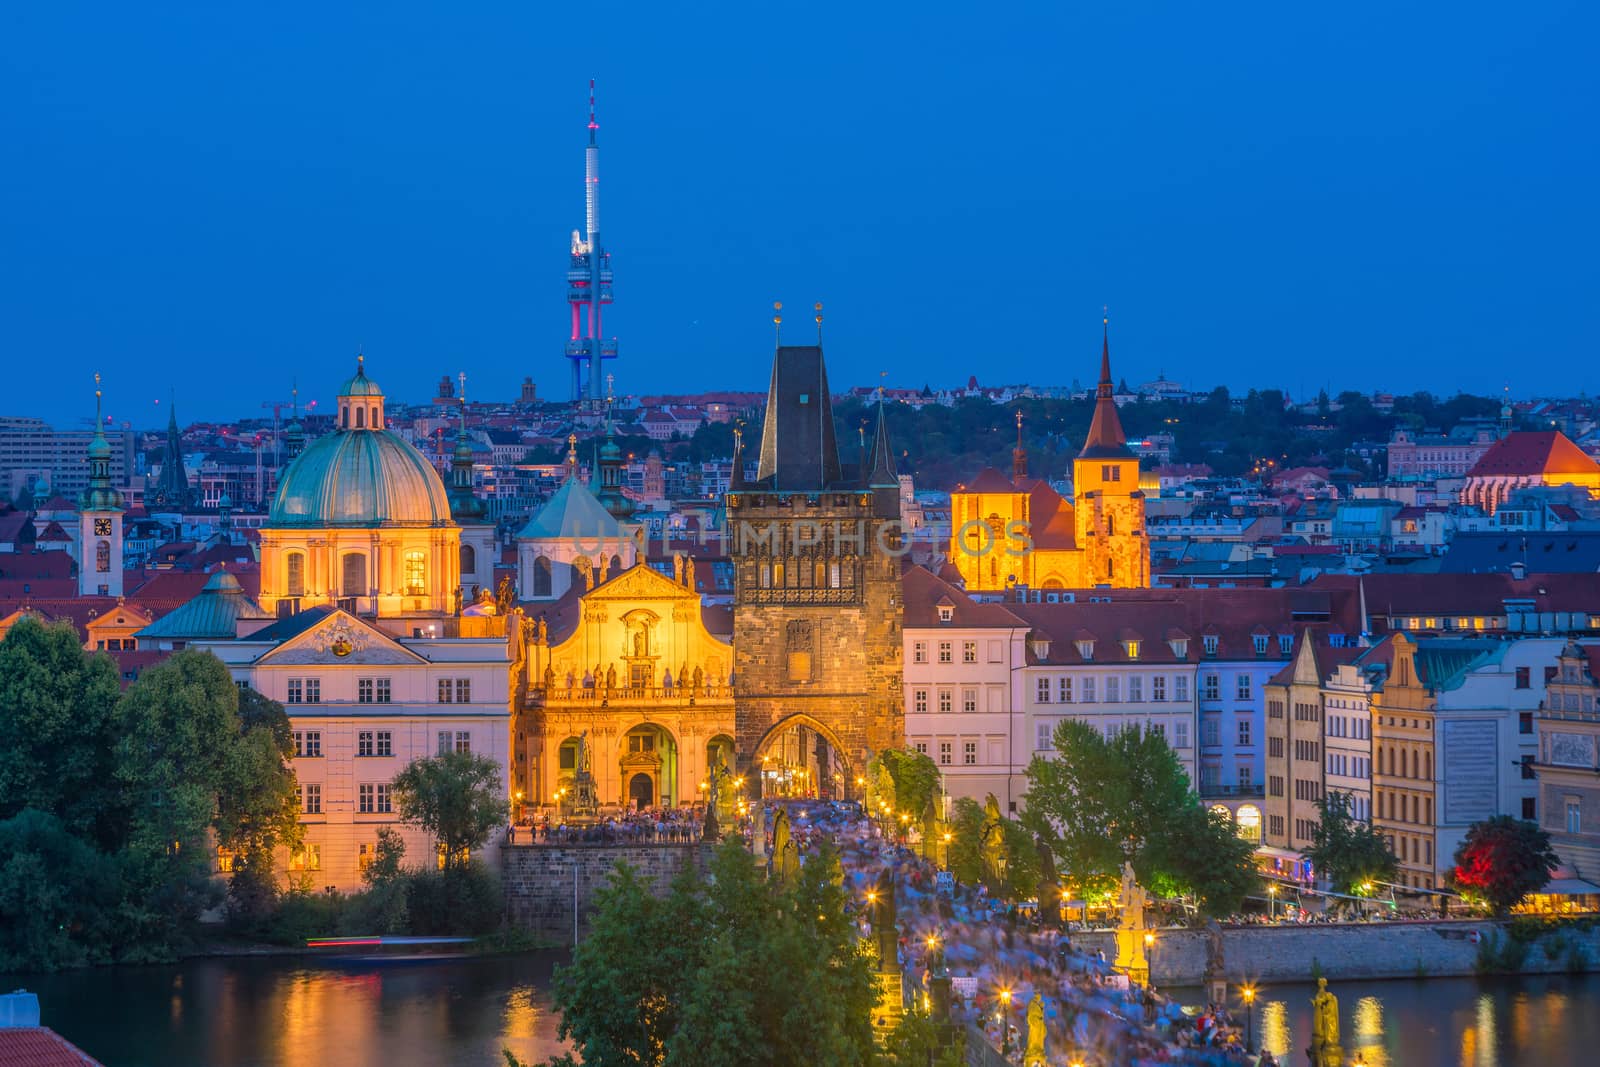 Famous iconic image of Charles bridge and Praguecity skyline by f11photo